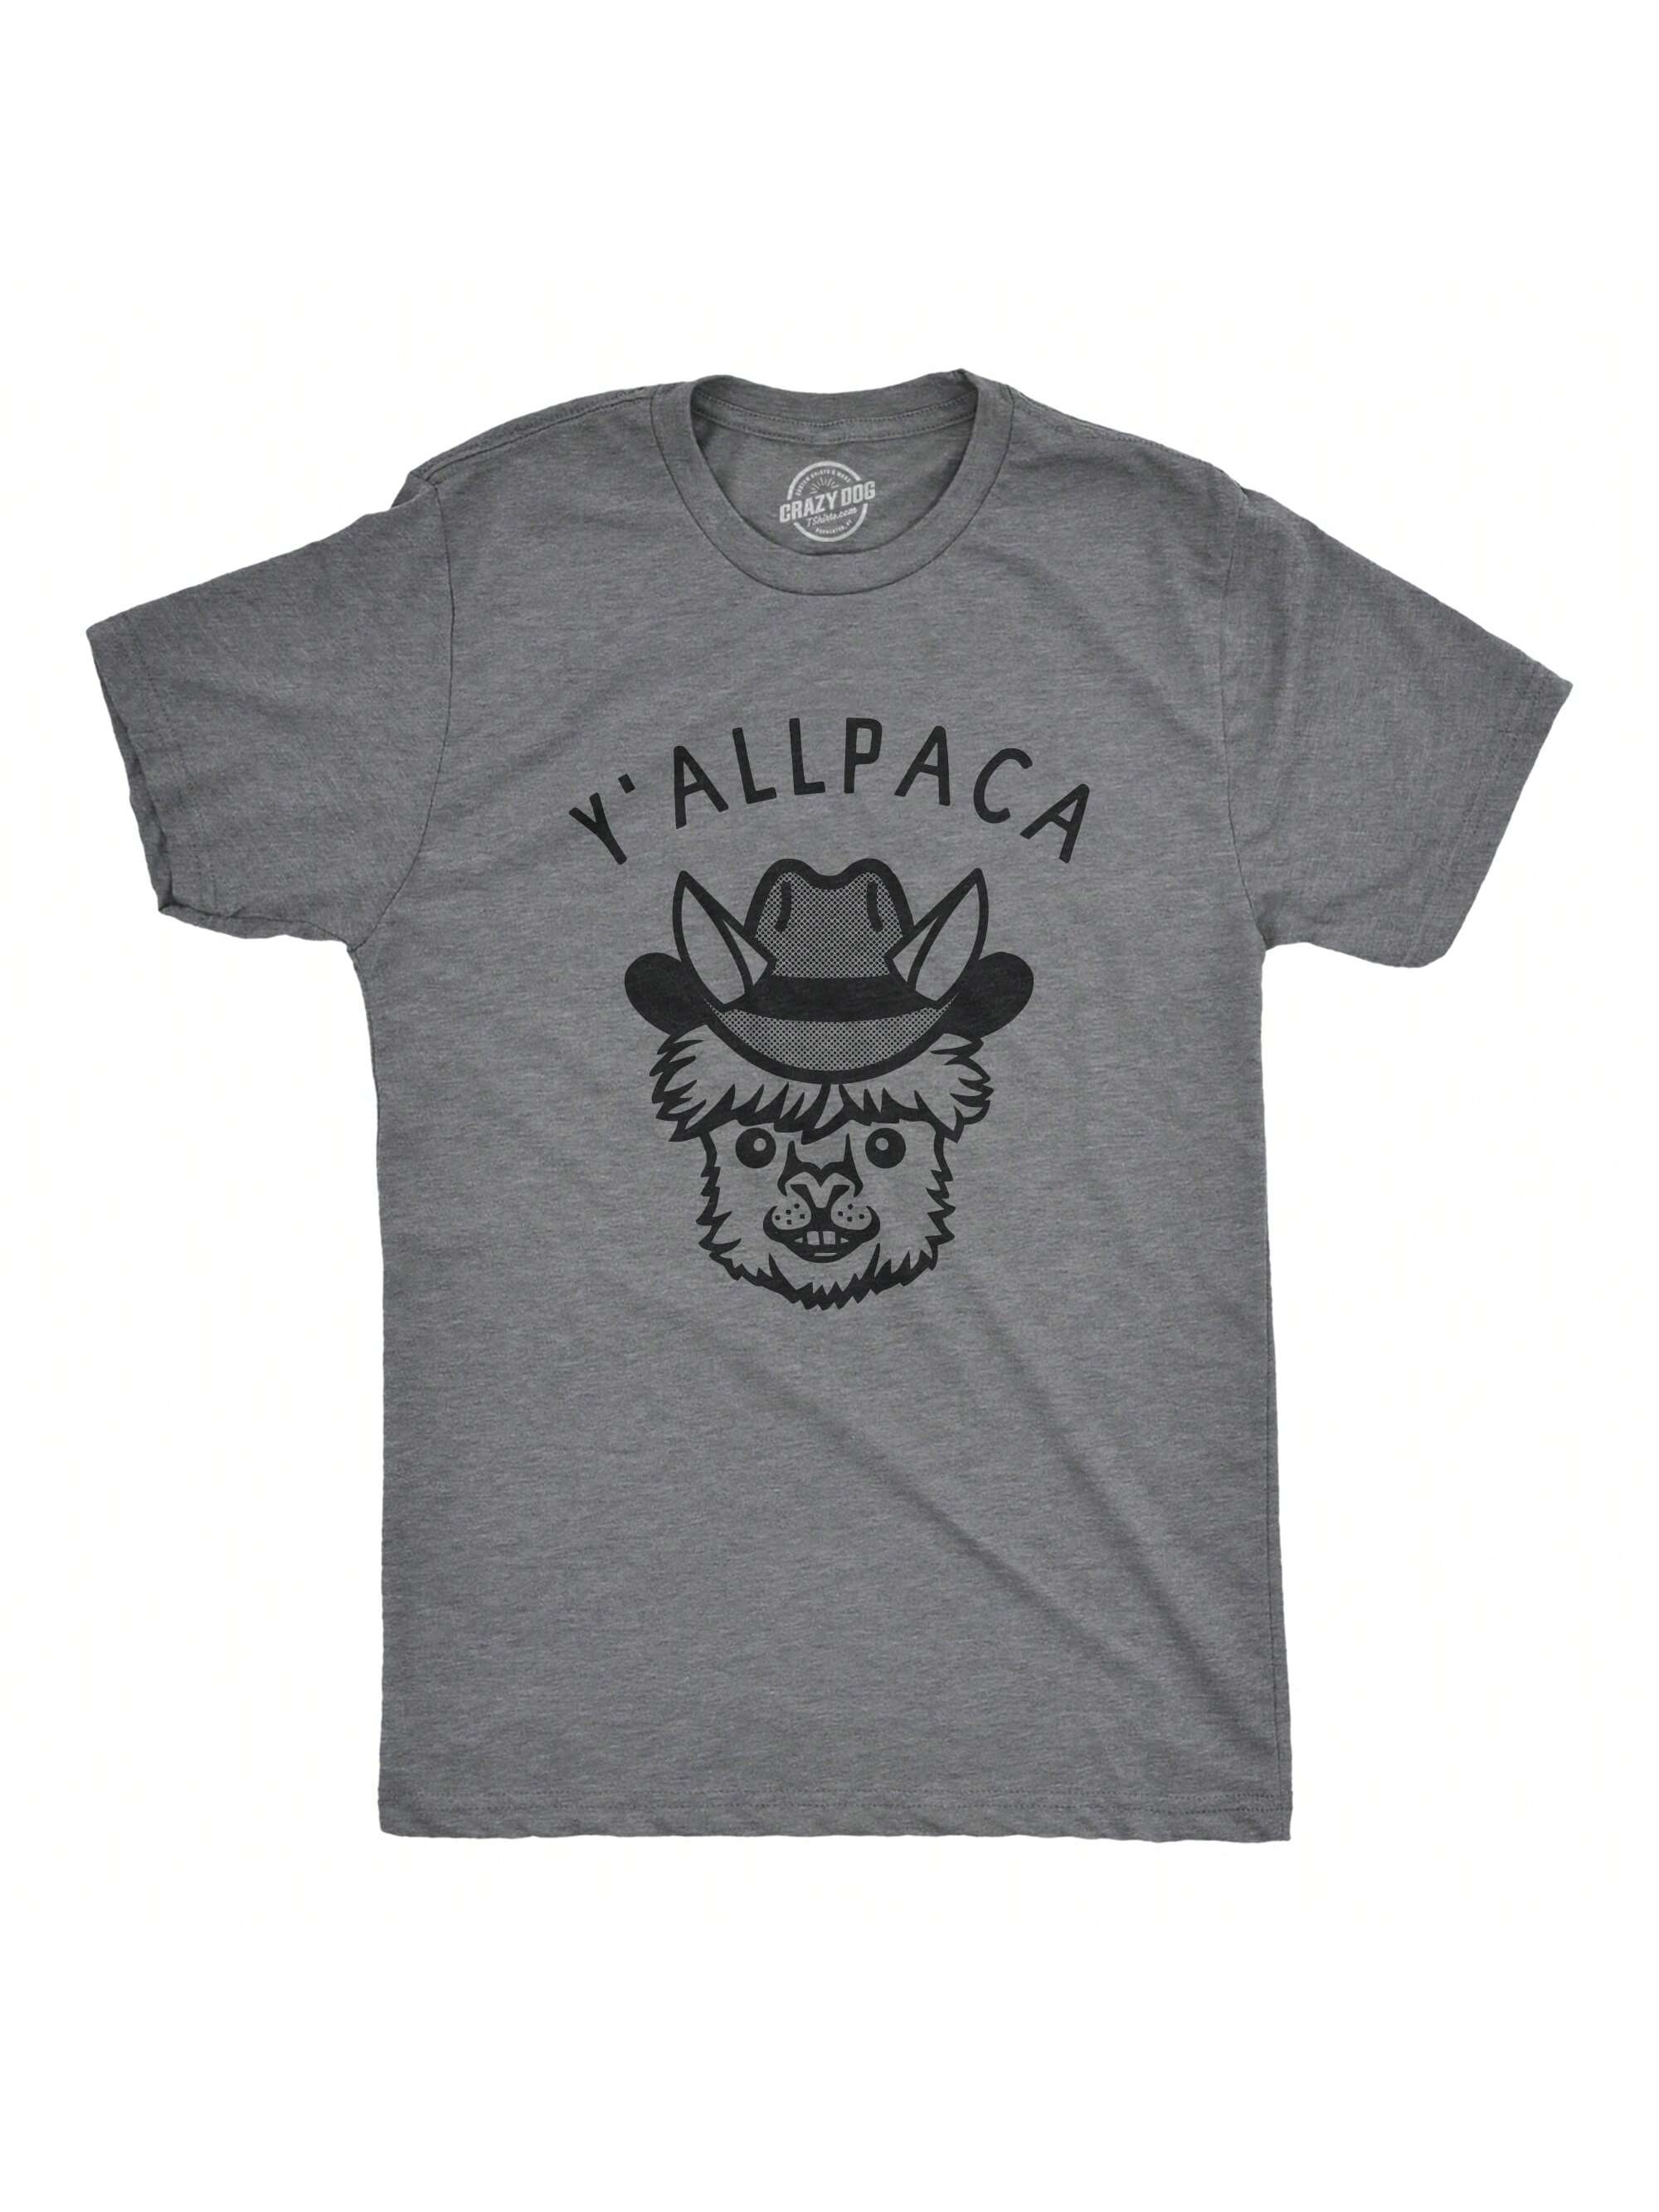 Мужская футболка «Nature Calls» с забавной саркастической надписью «Медведь какает», темно-серый вереск - yallpaca мужская футболка мафия медведь m синий